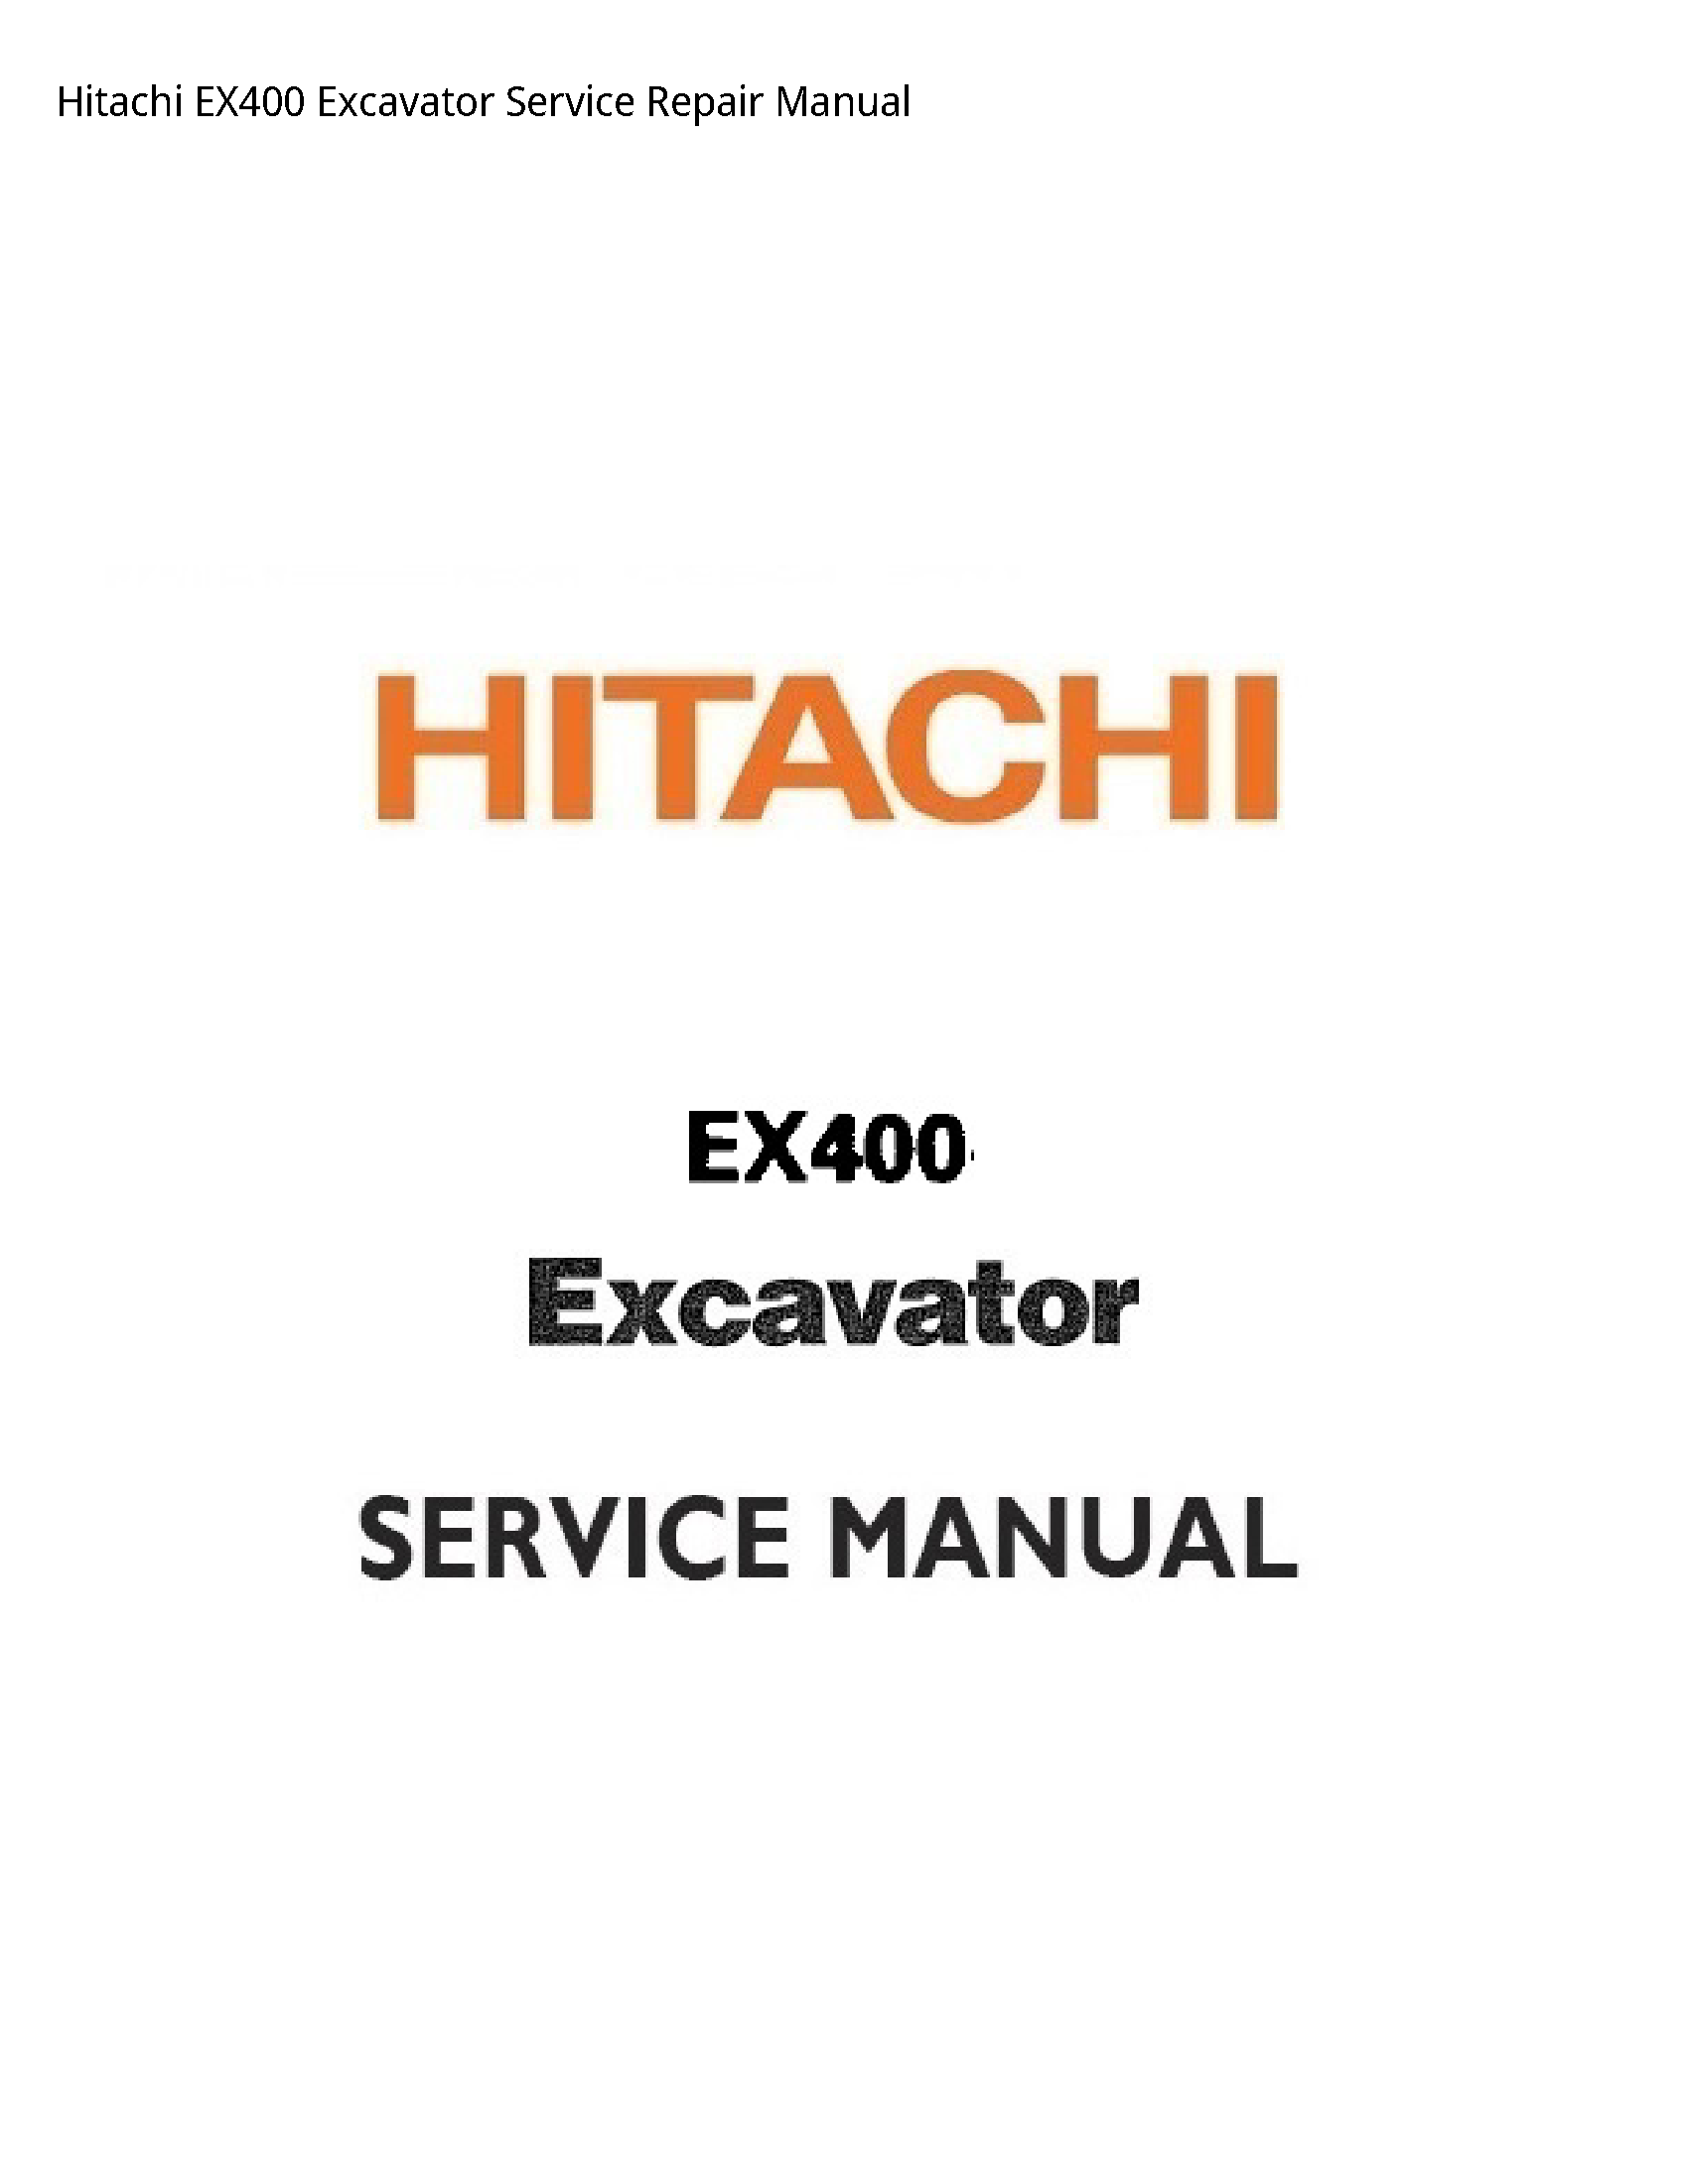 Hitachi EX400 Excavator manual